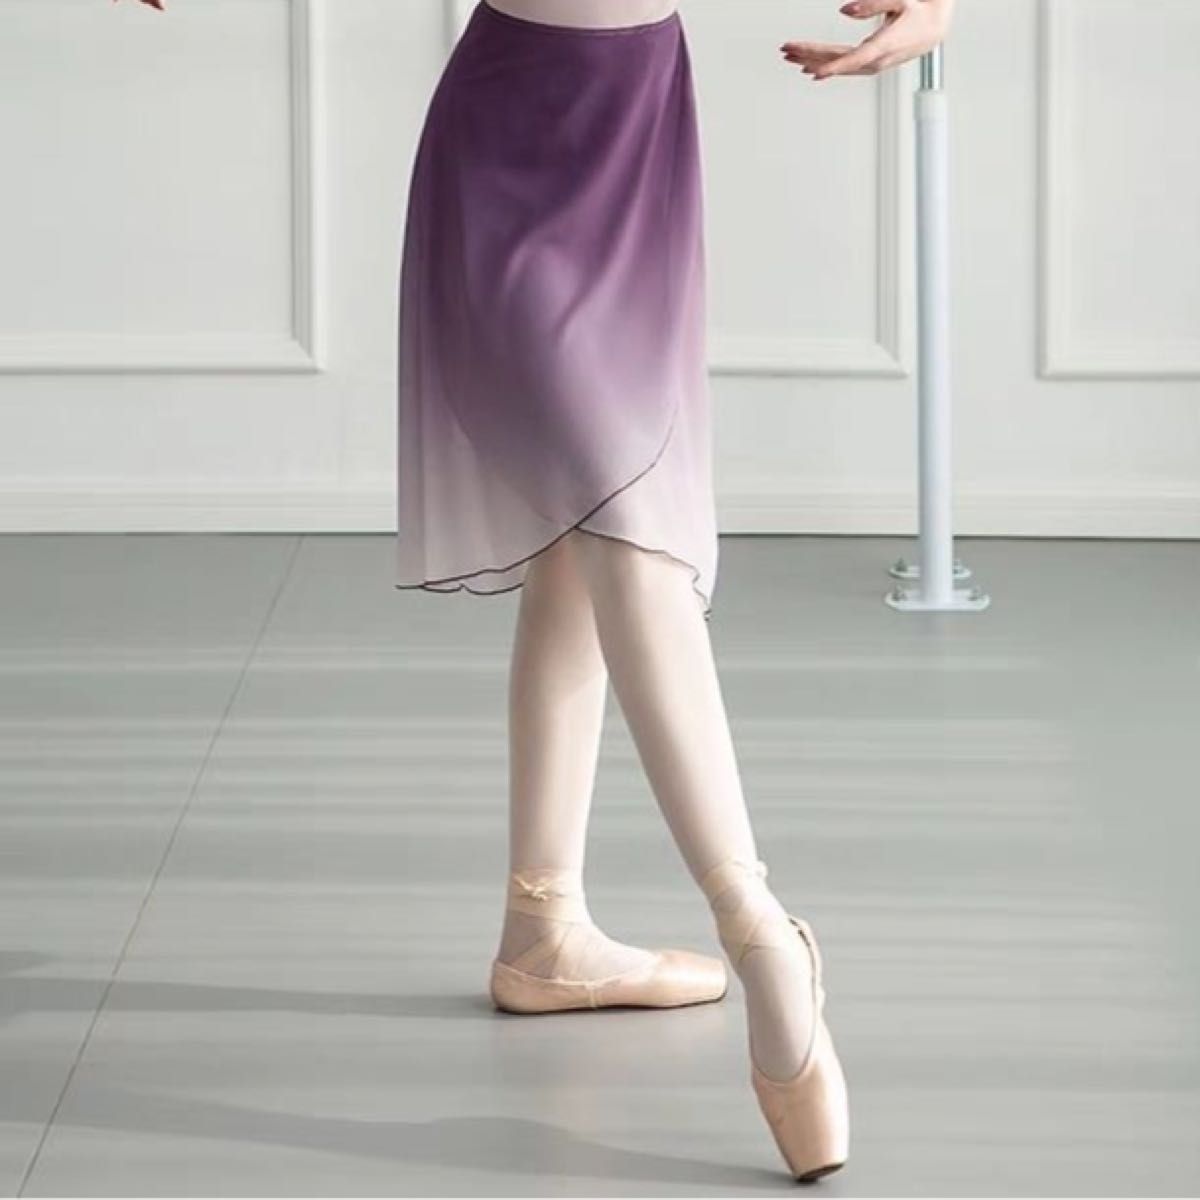 グラデーション ラップスカート ダンス衣装 ラテン モダン 社交 ダンスウェア